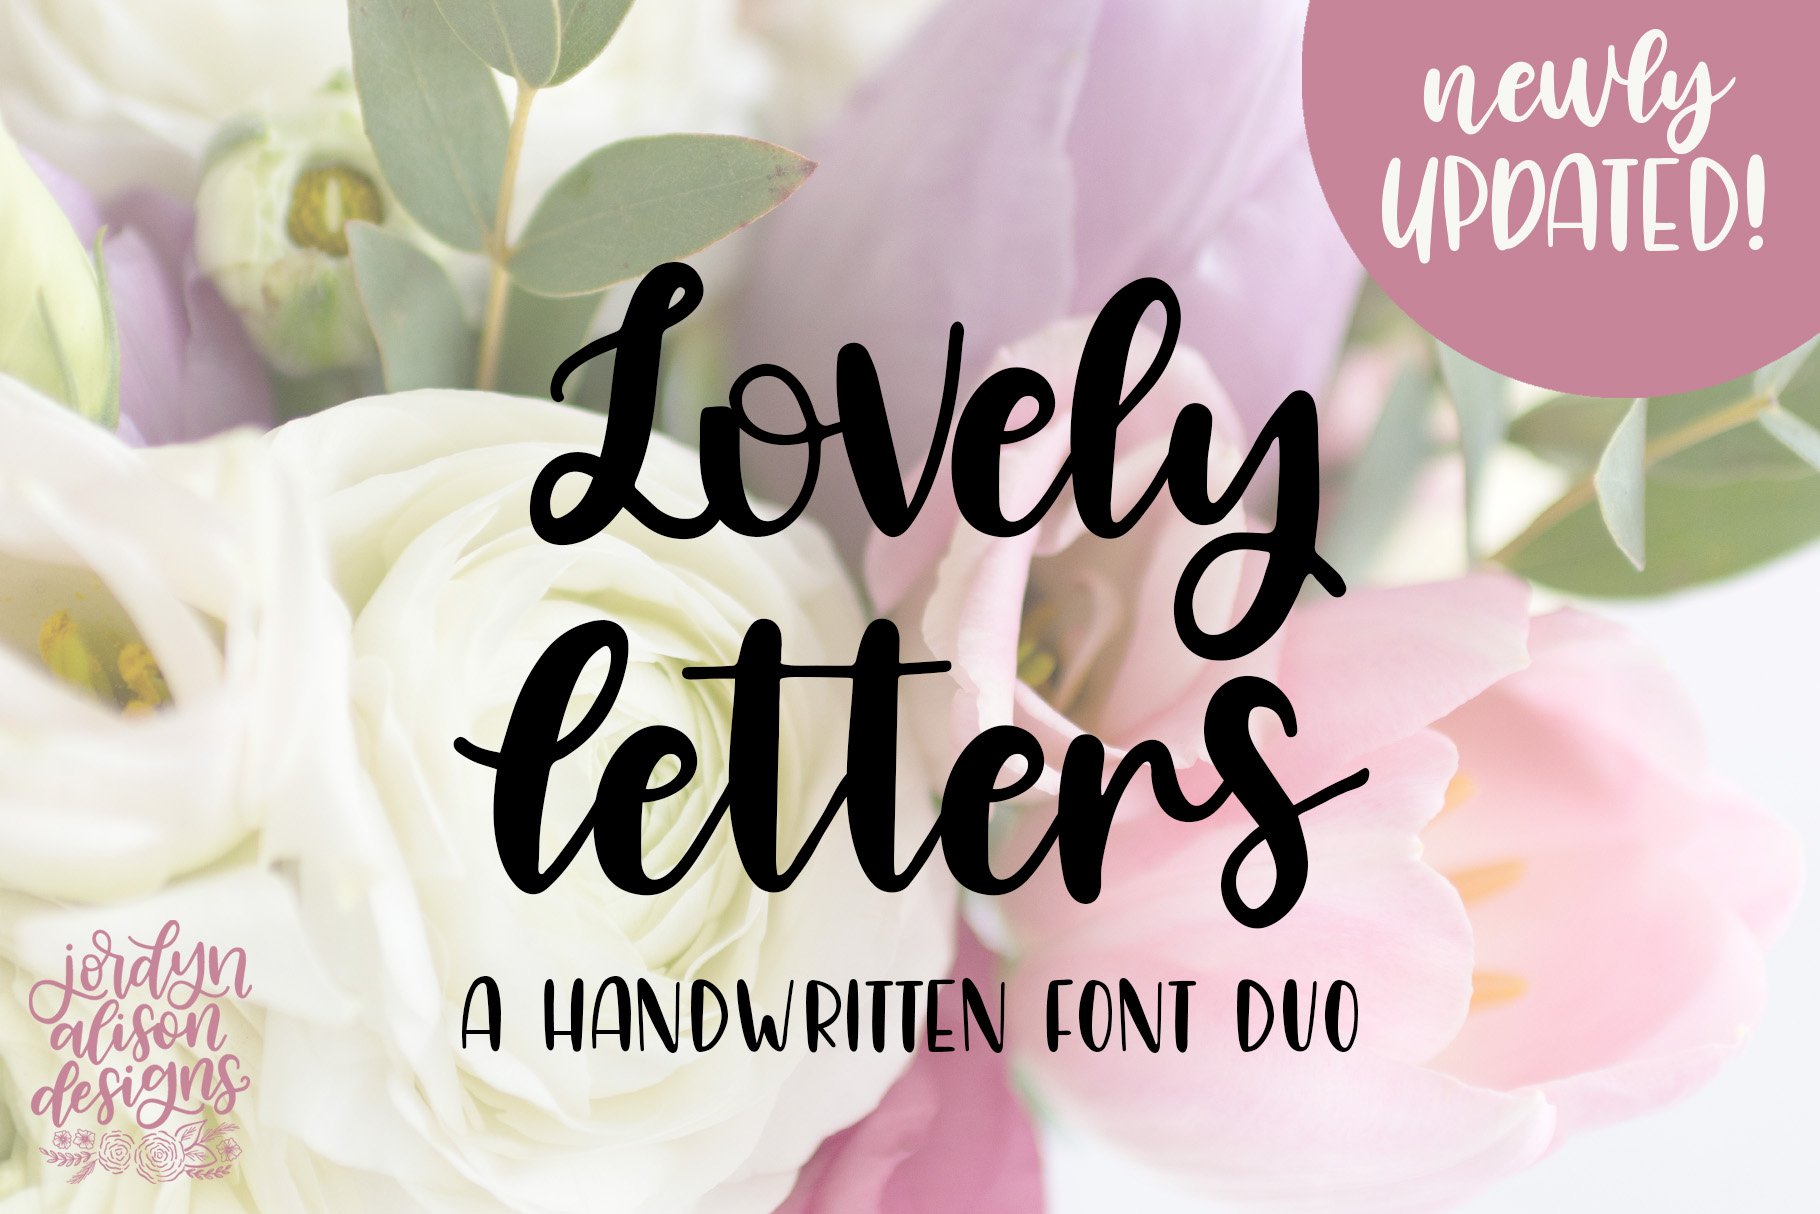 Lovely Letters Handwritten Script cover image.